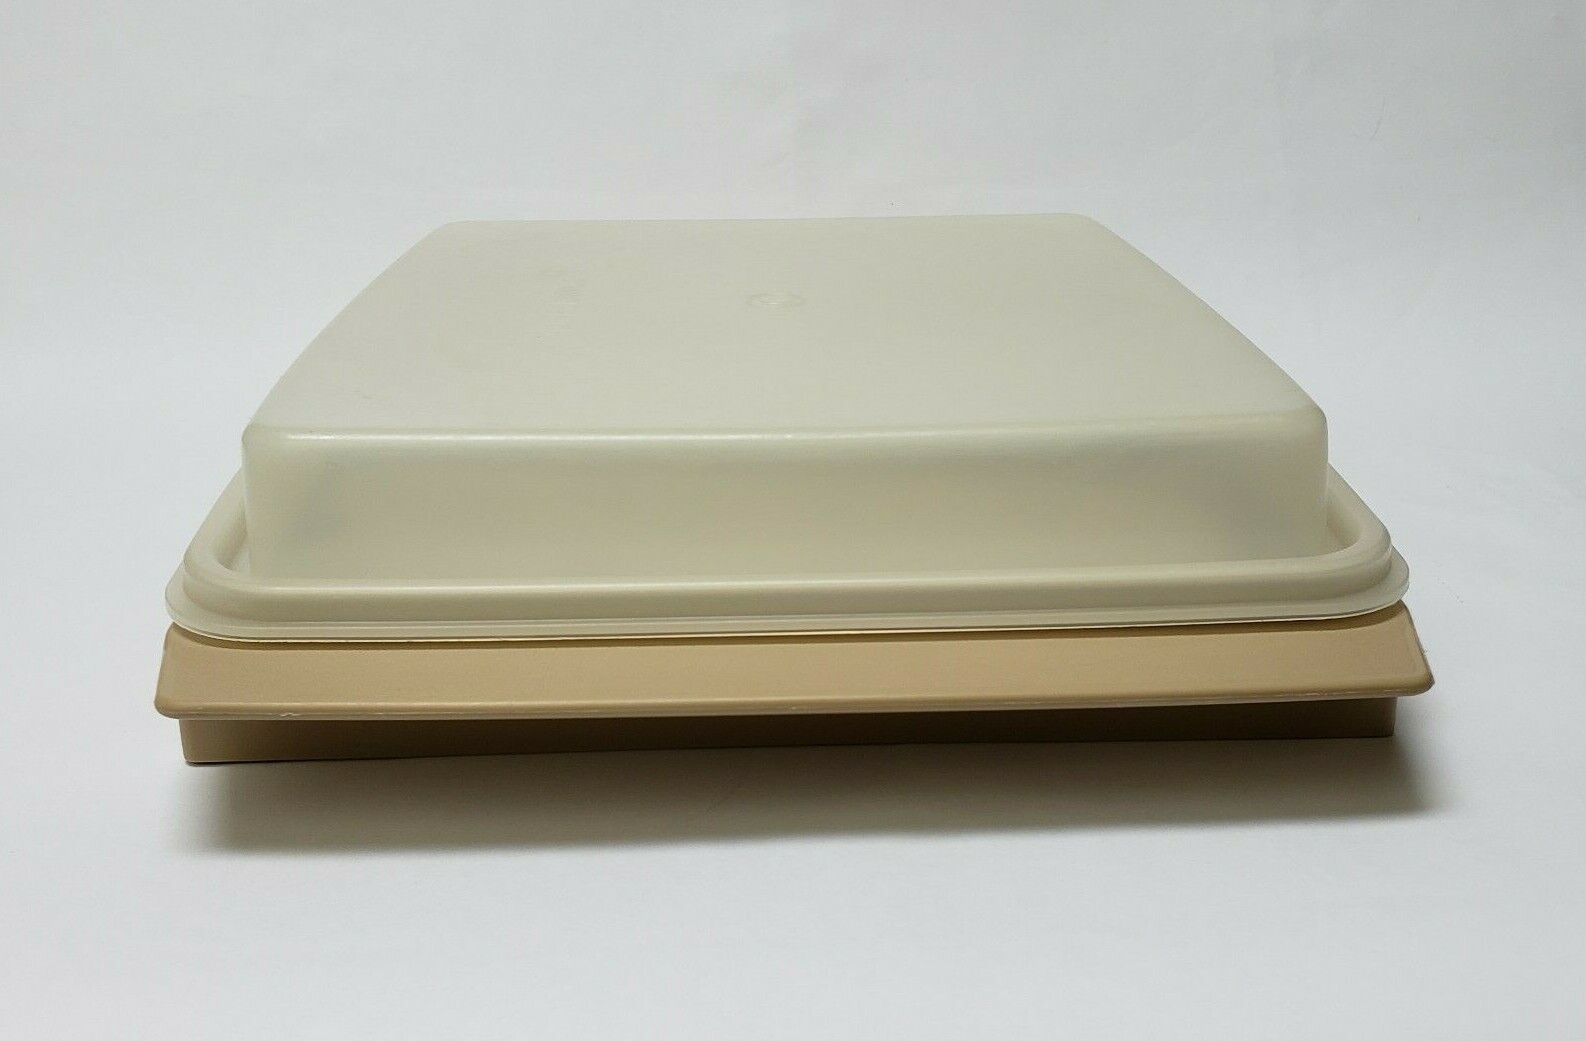 Tupperware, Kitchen, Tupperware Bowl Cheese Grater Slicer Bowl Jadeite  Green 786 787 Vintage